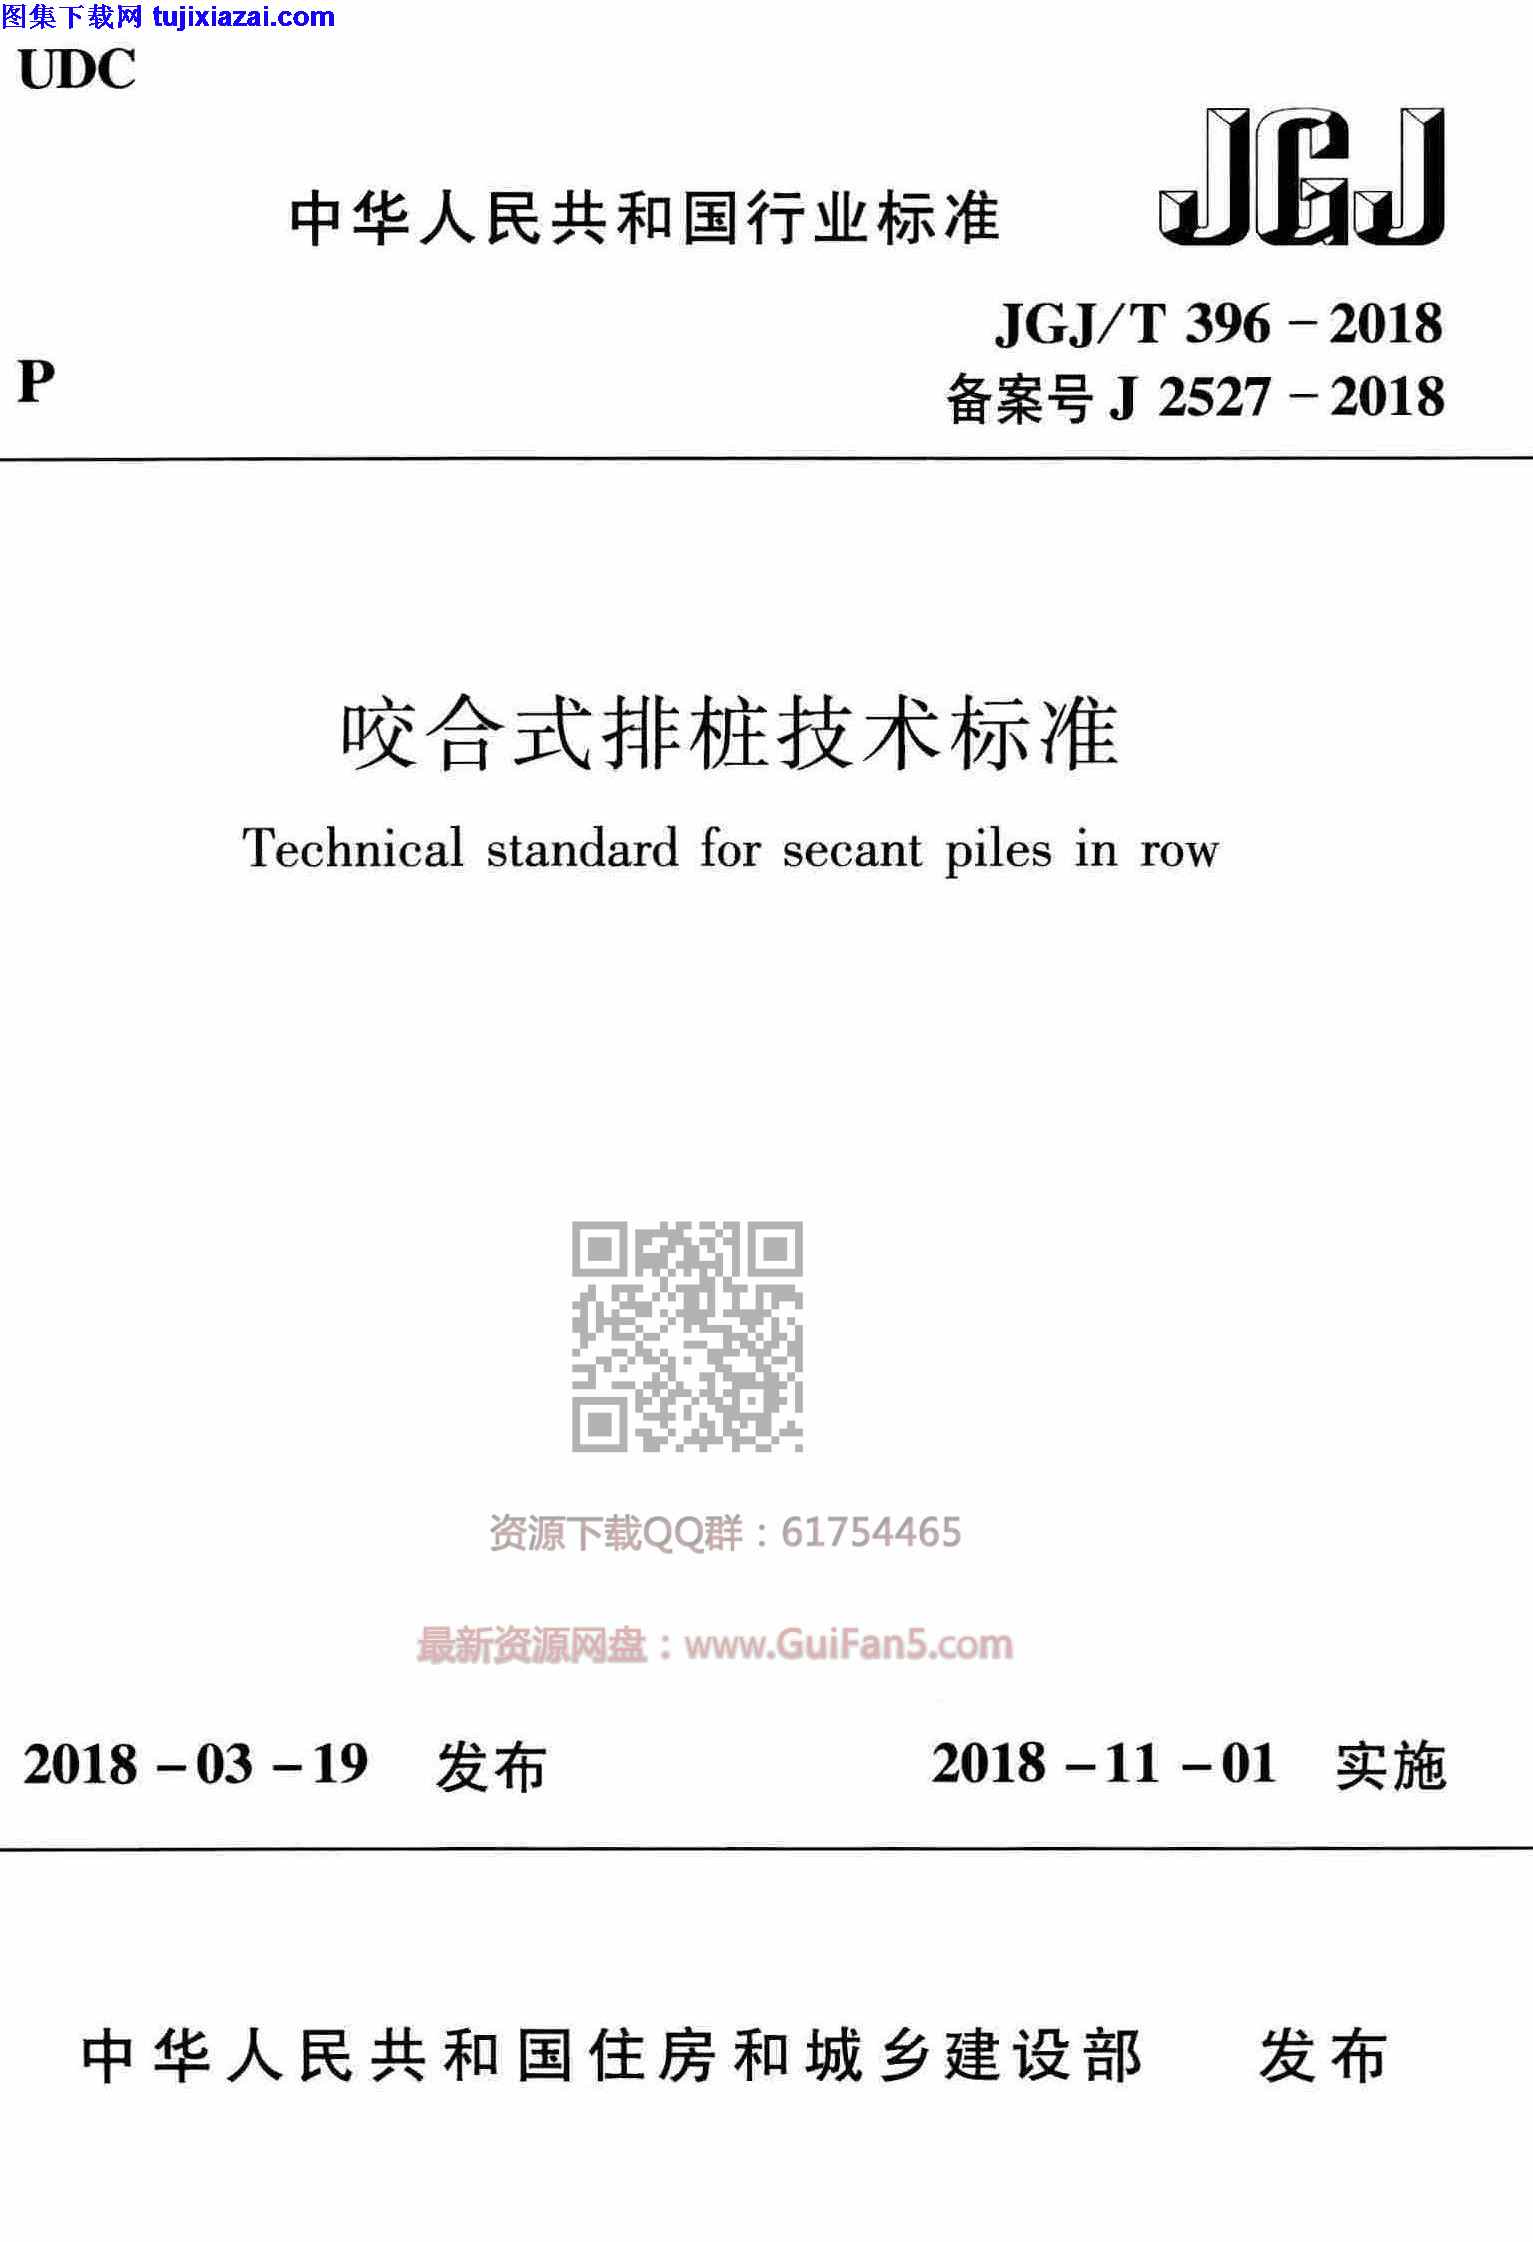 JGJT_396-2018,咬合式排桩技术标准,JGJT_396-2018_咬合式排桩技术标准.pdf